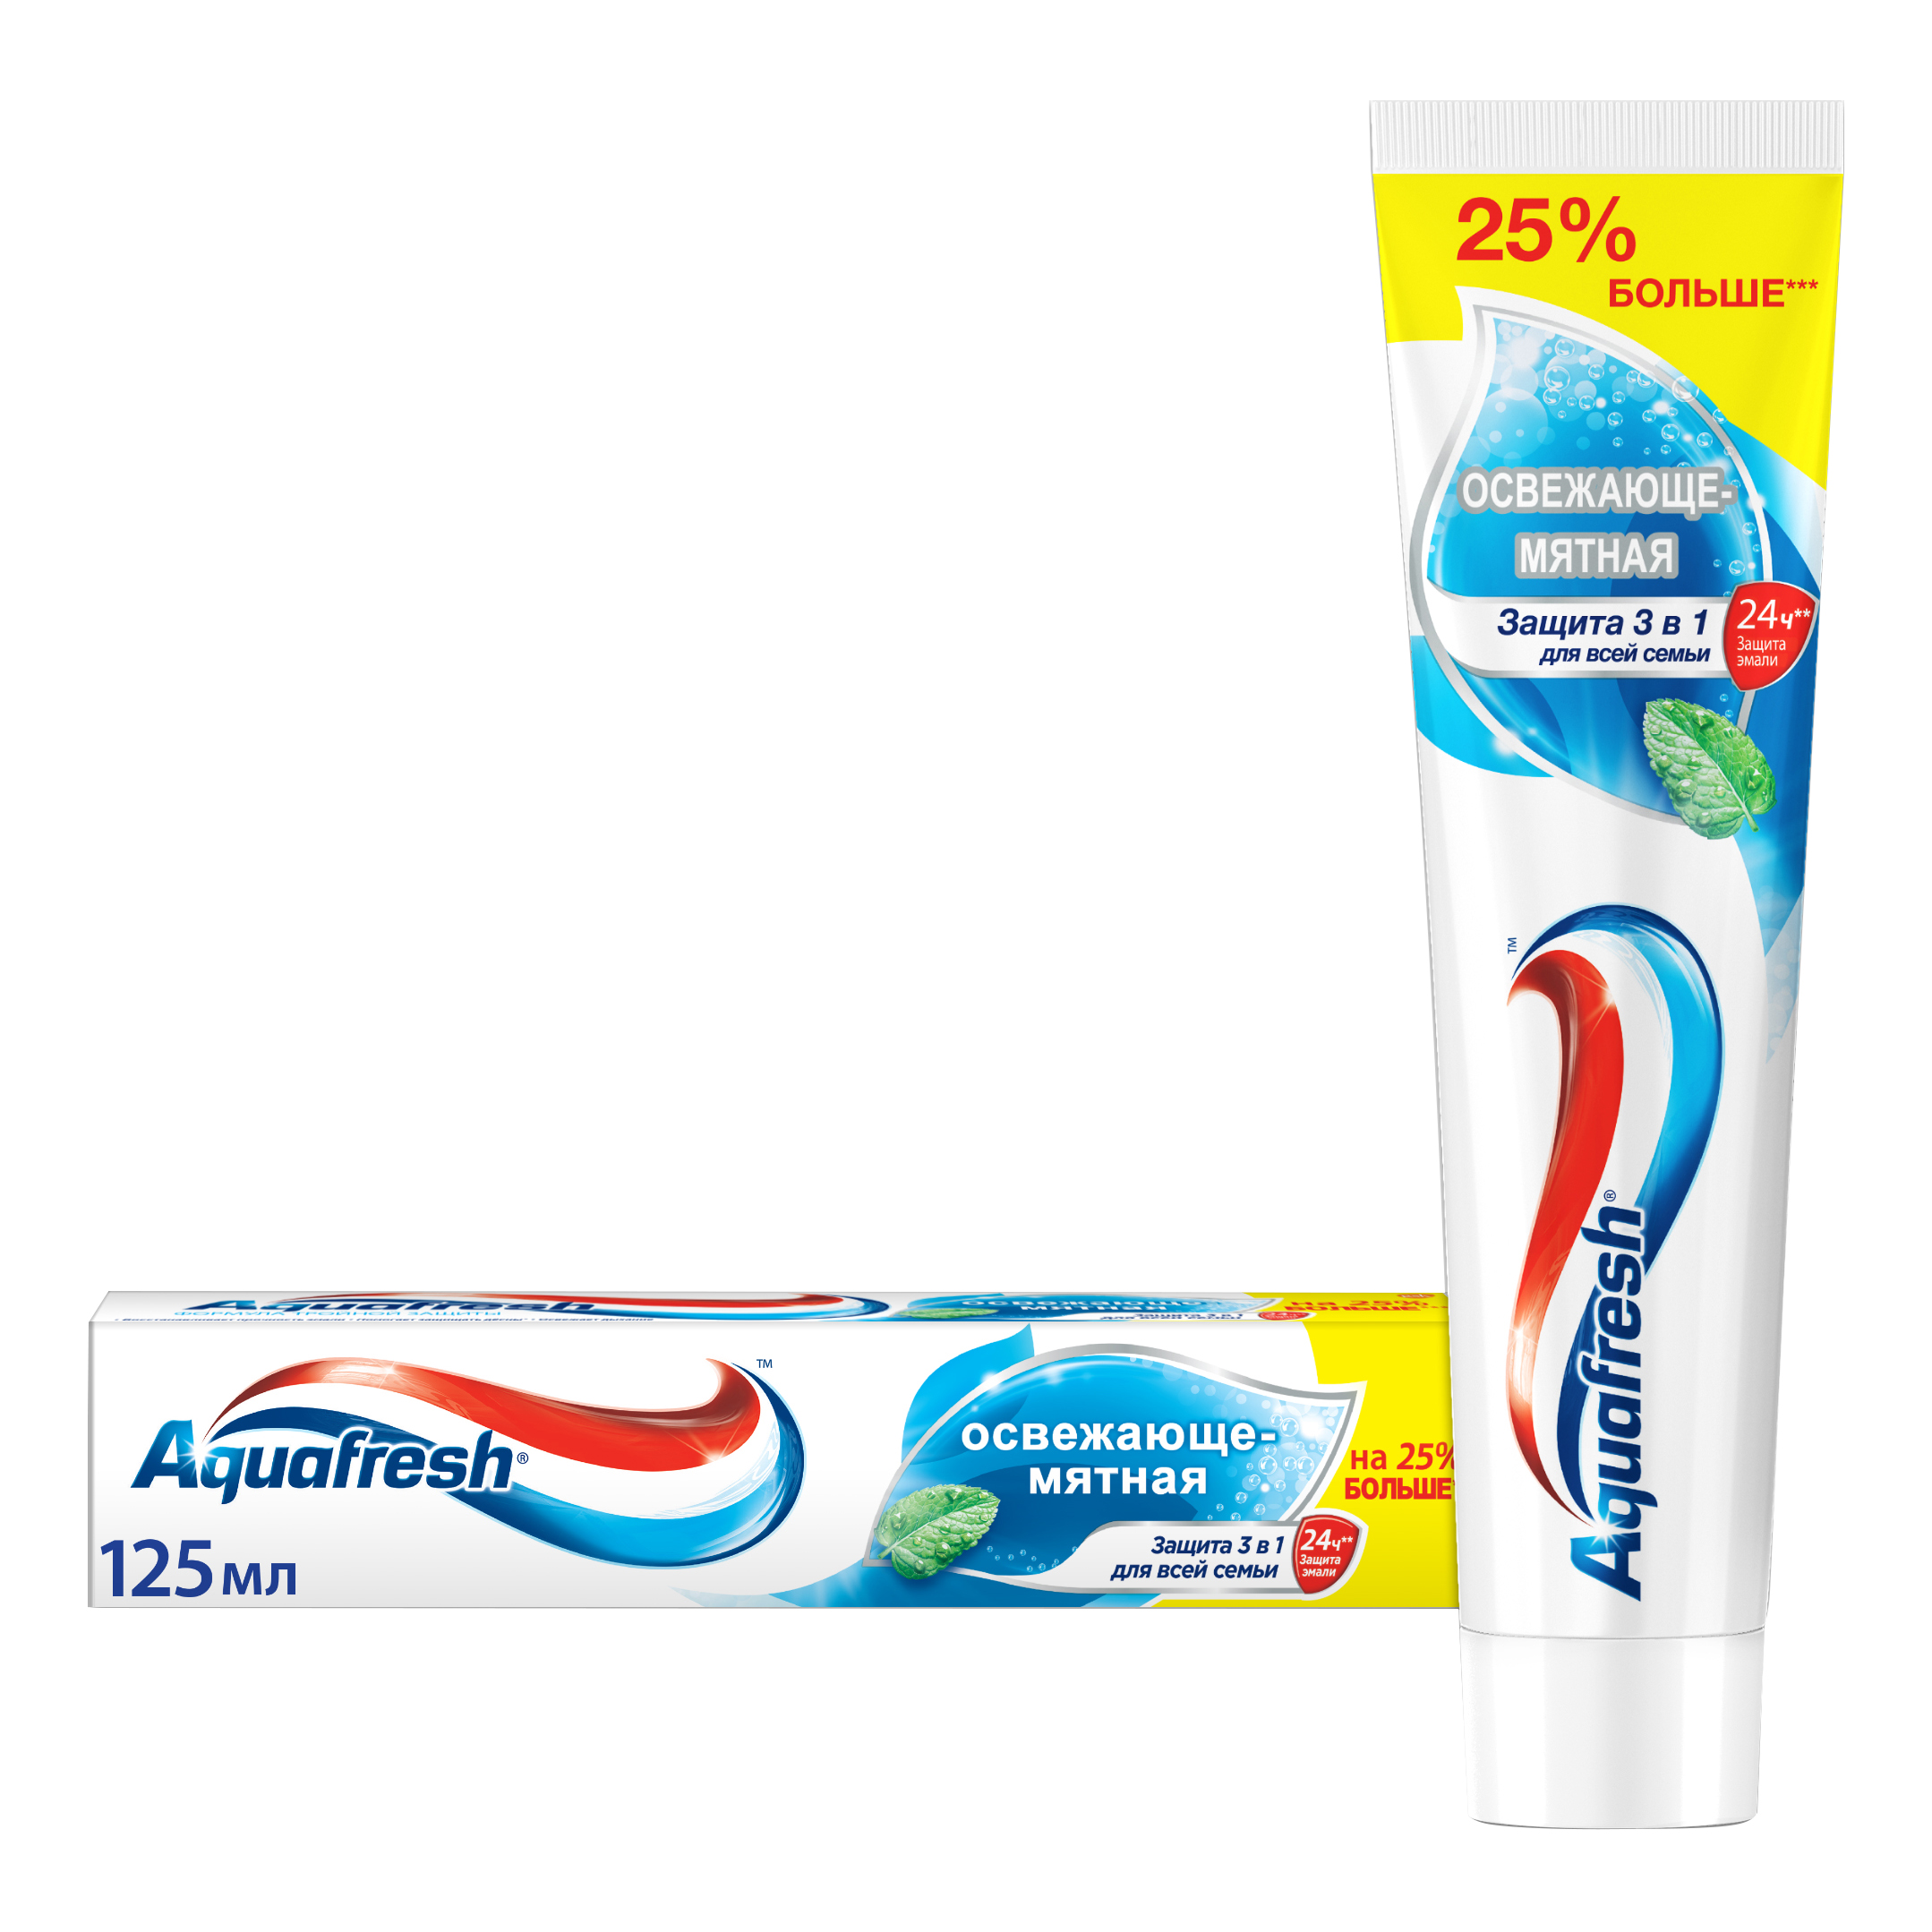 Зубная паста Aquafresh Тройная защита Освежающе-мятная, 125 мл зубная паста весна главаптека мятная 90 г